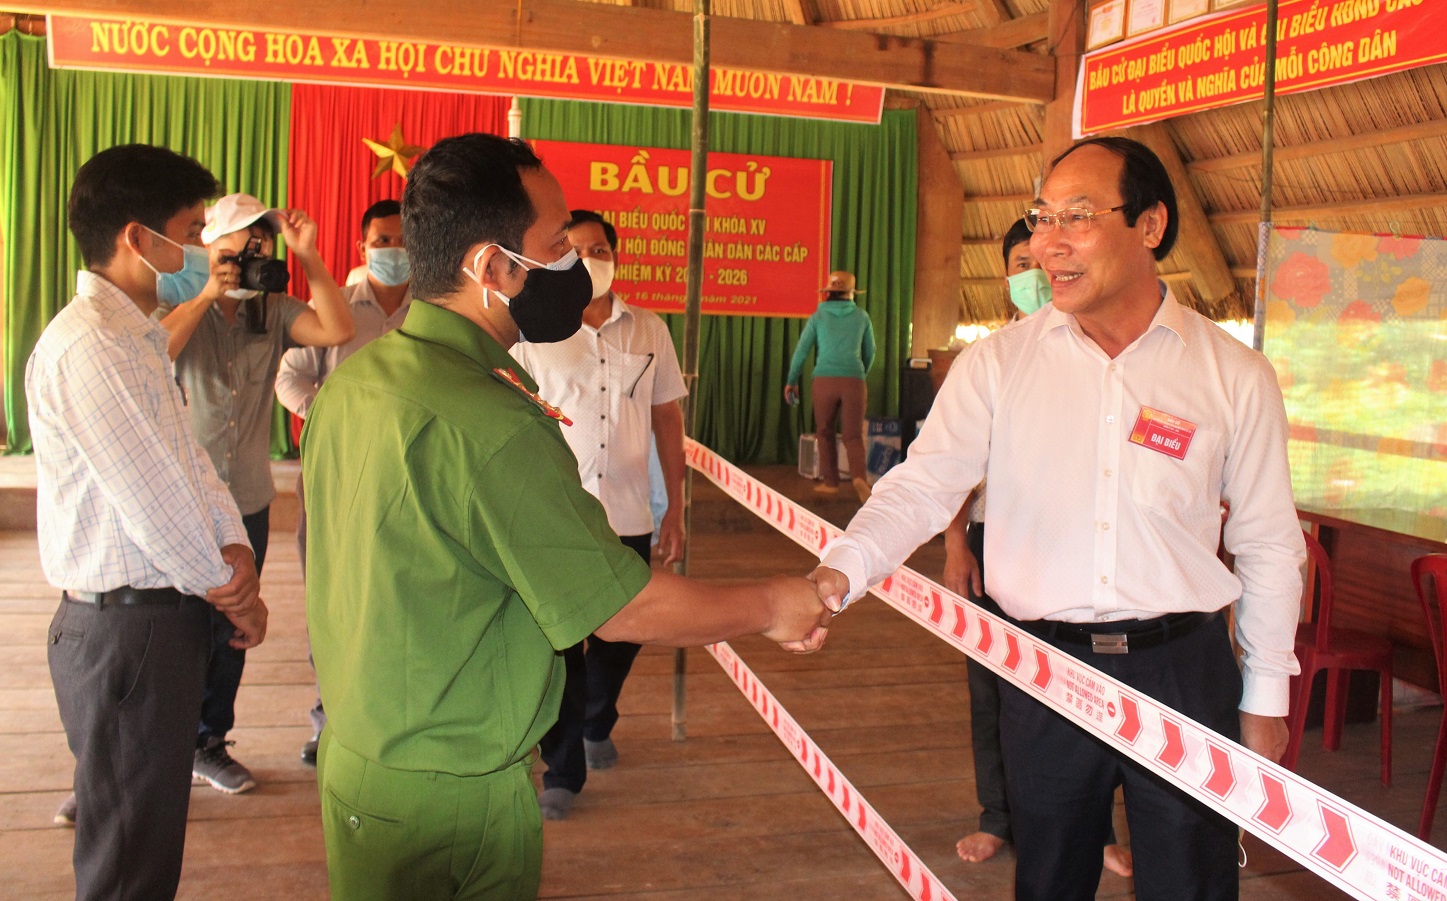 Người dân 6 xã biên giới Quảng Nam háo hức vào ngày hội bầu cử sớm - Ảnh 2.